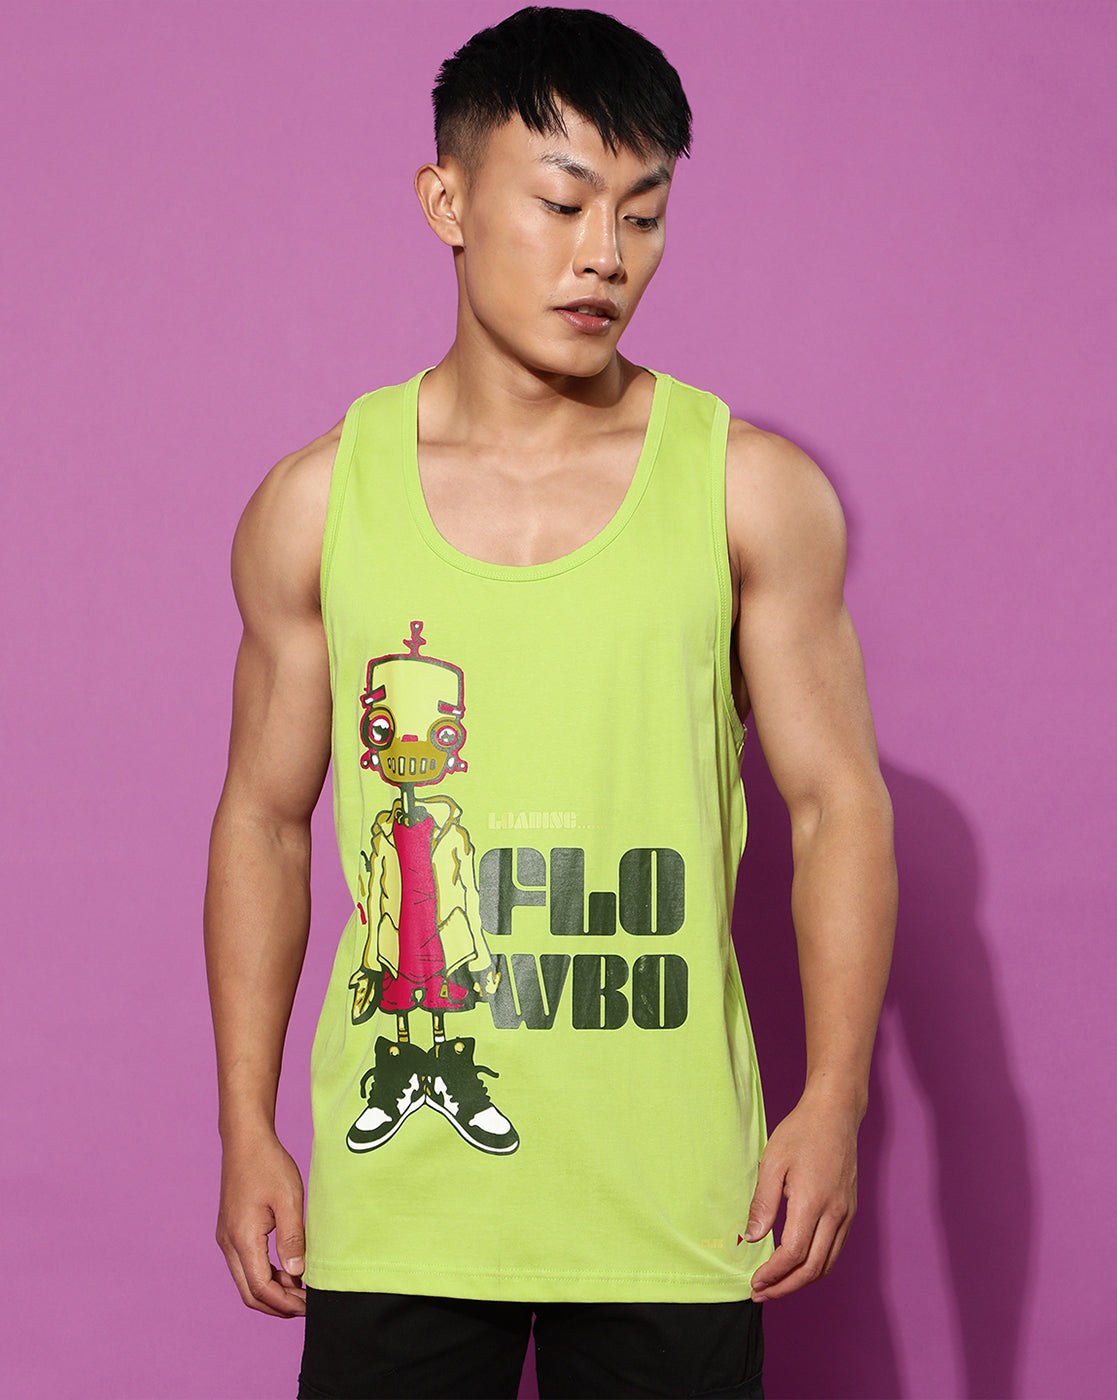 Flowbo Lemonade Men's Sleeveless T-Shirt Veirdo